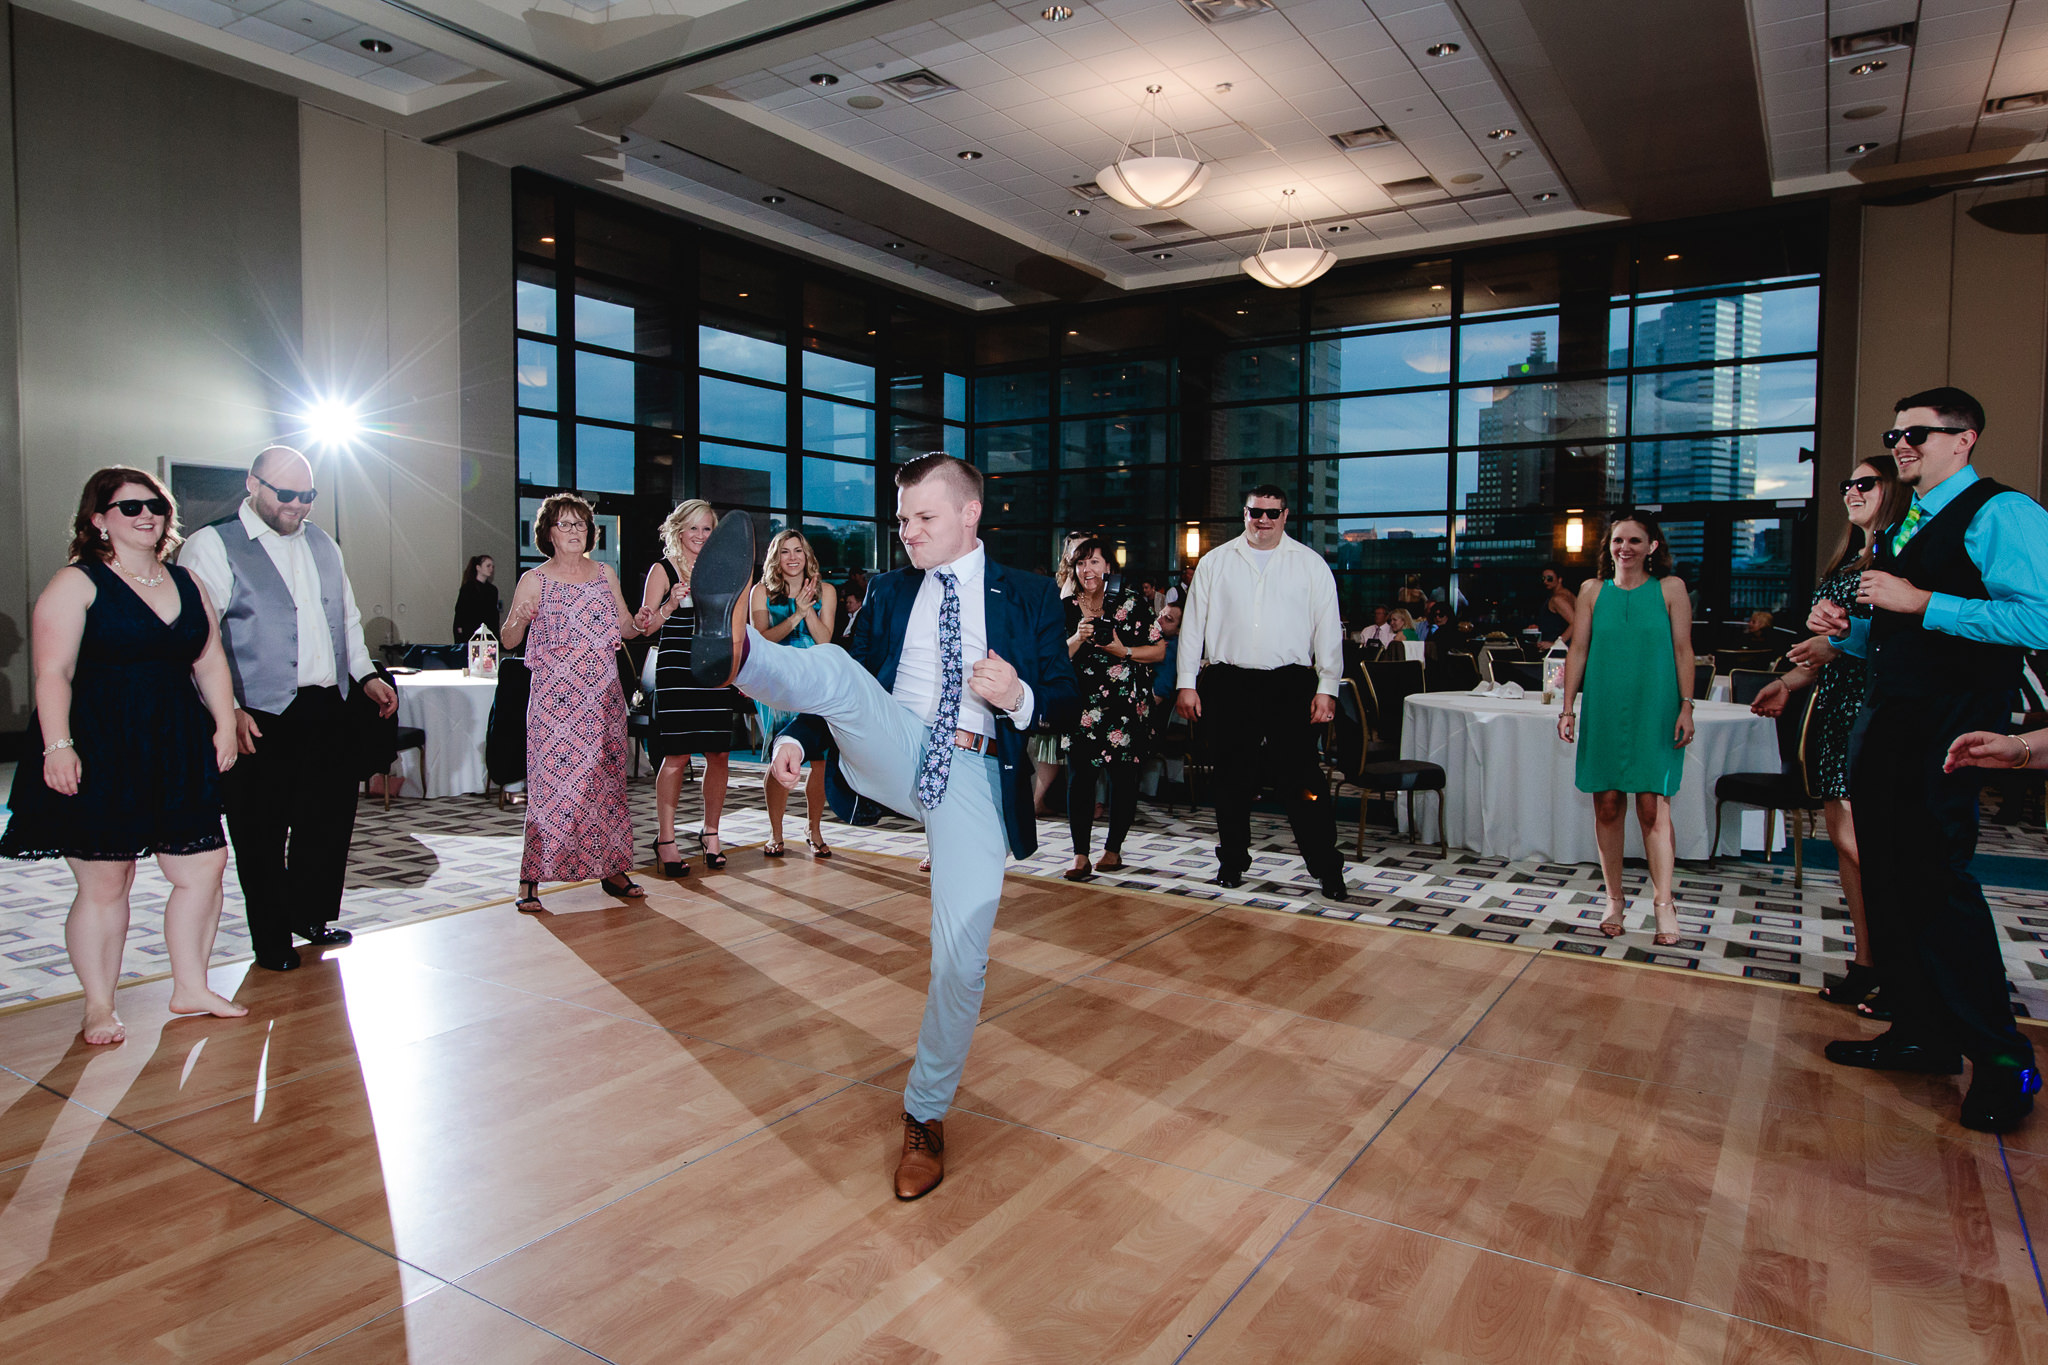 Guest dances inside a circle at Duquesne University